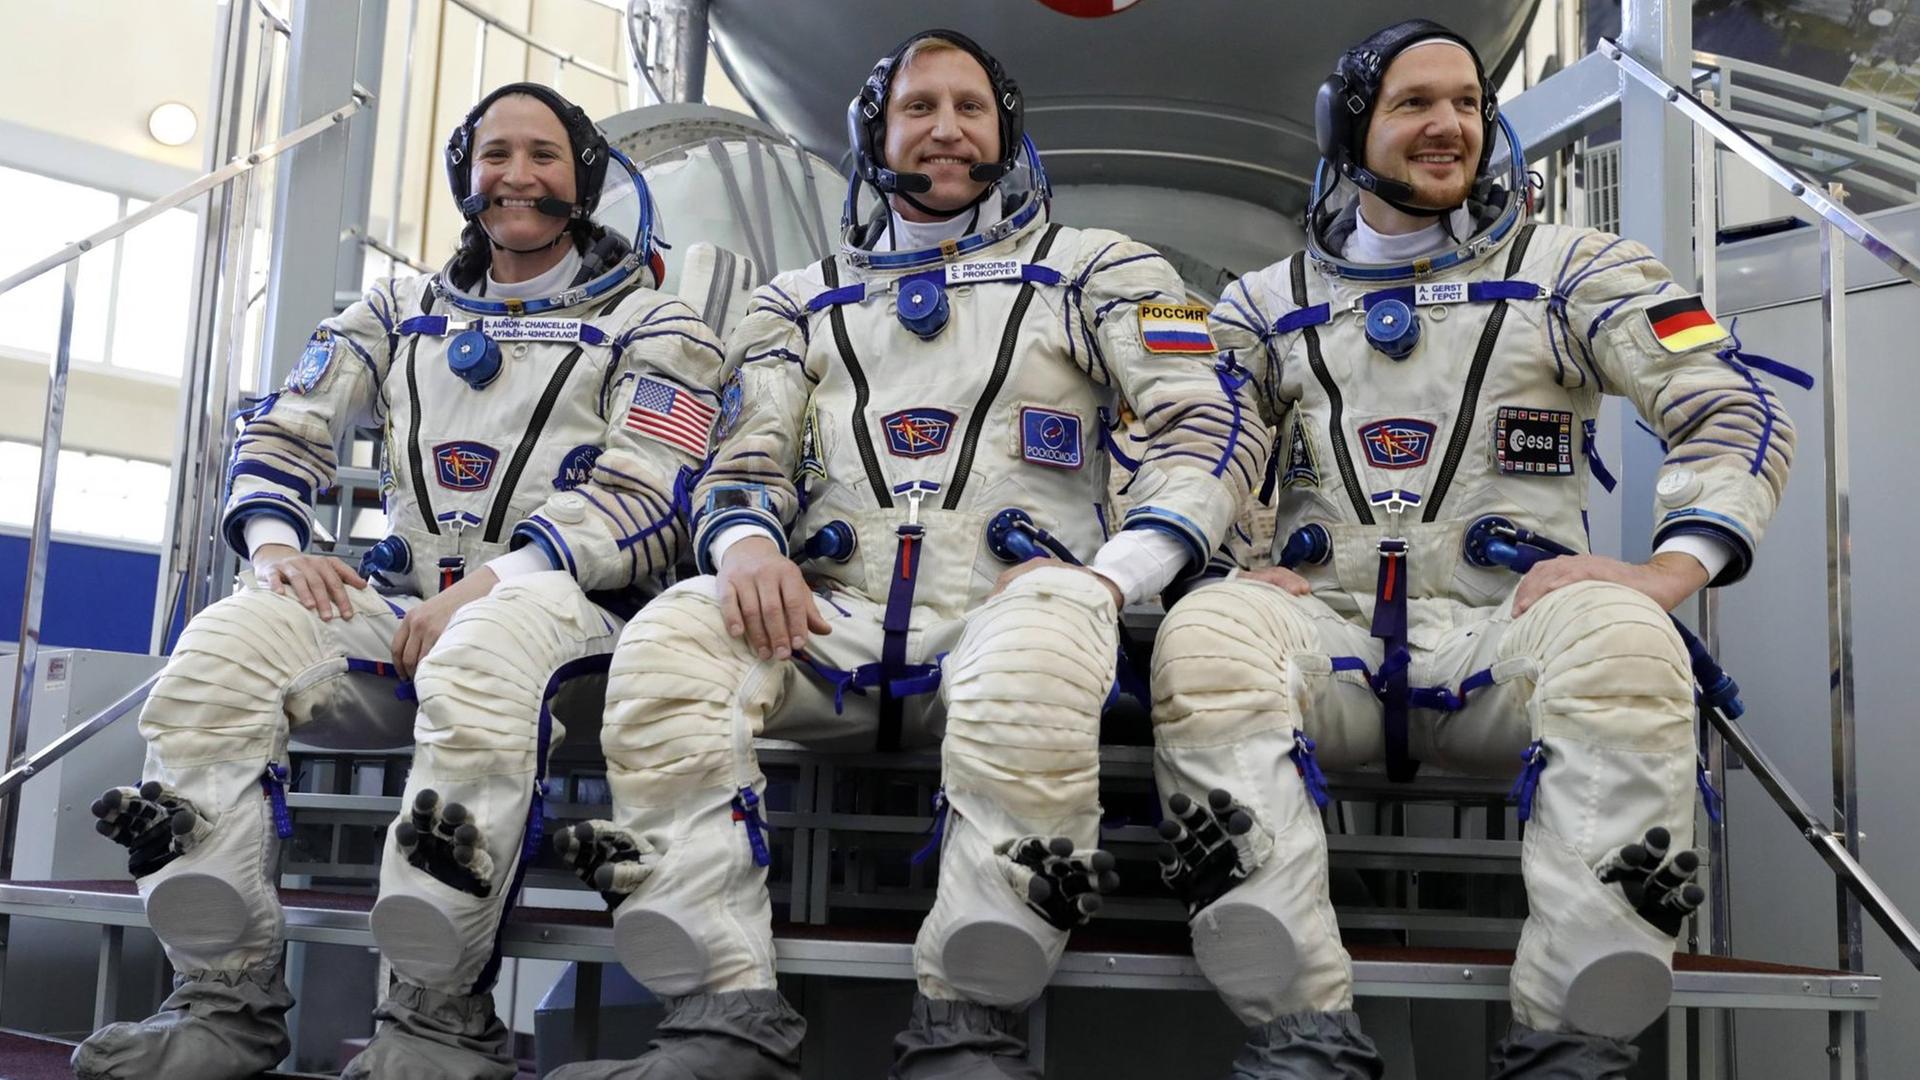 Die drei Astronauten sitzen in Astronautenanzügen vor einem Simulator im Yuri Gagarin-Trainingszentrum